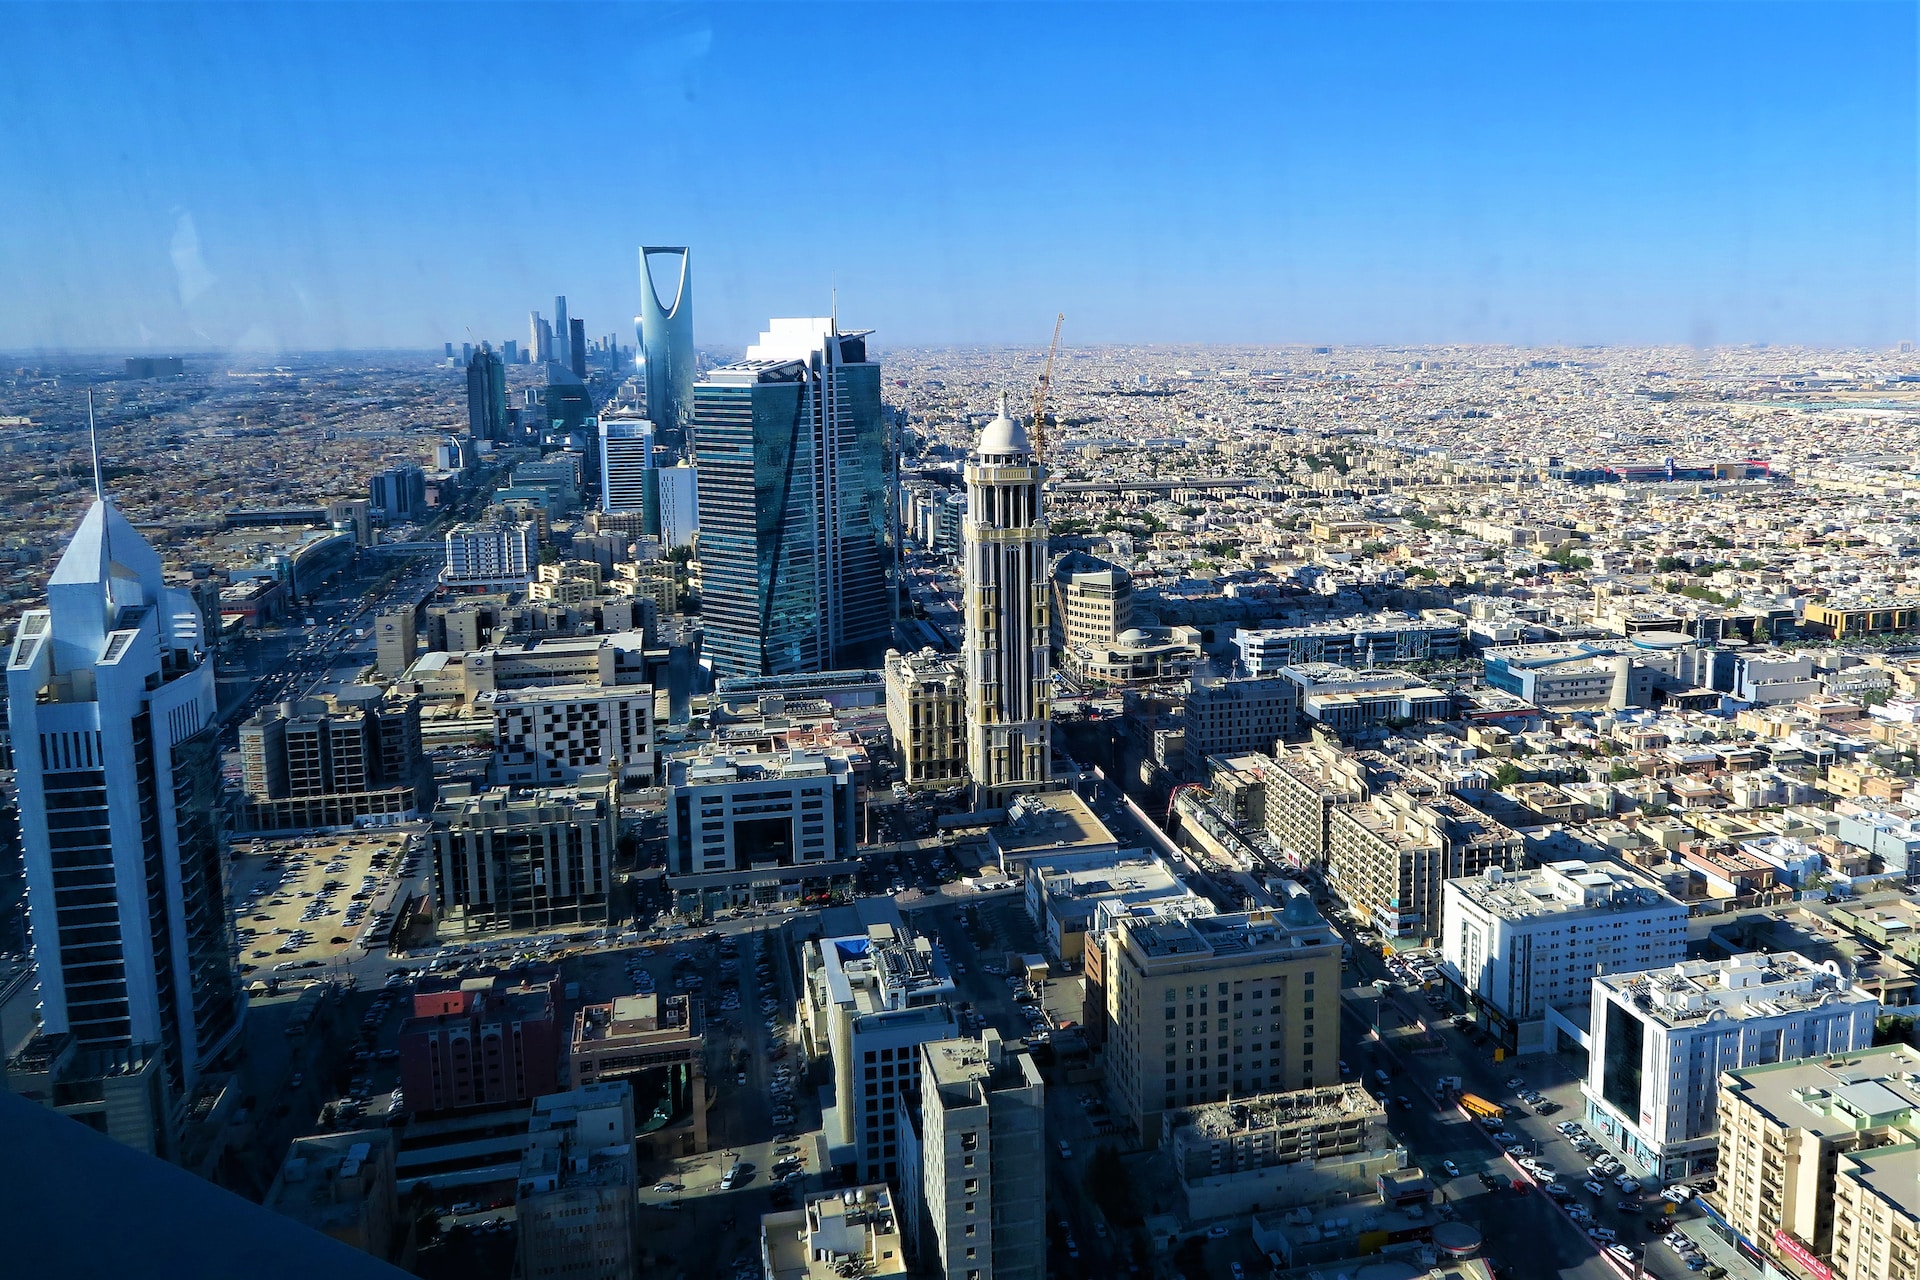 An aerial view of Riyadh, Saudi Arabia's capital city